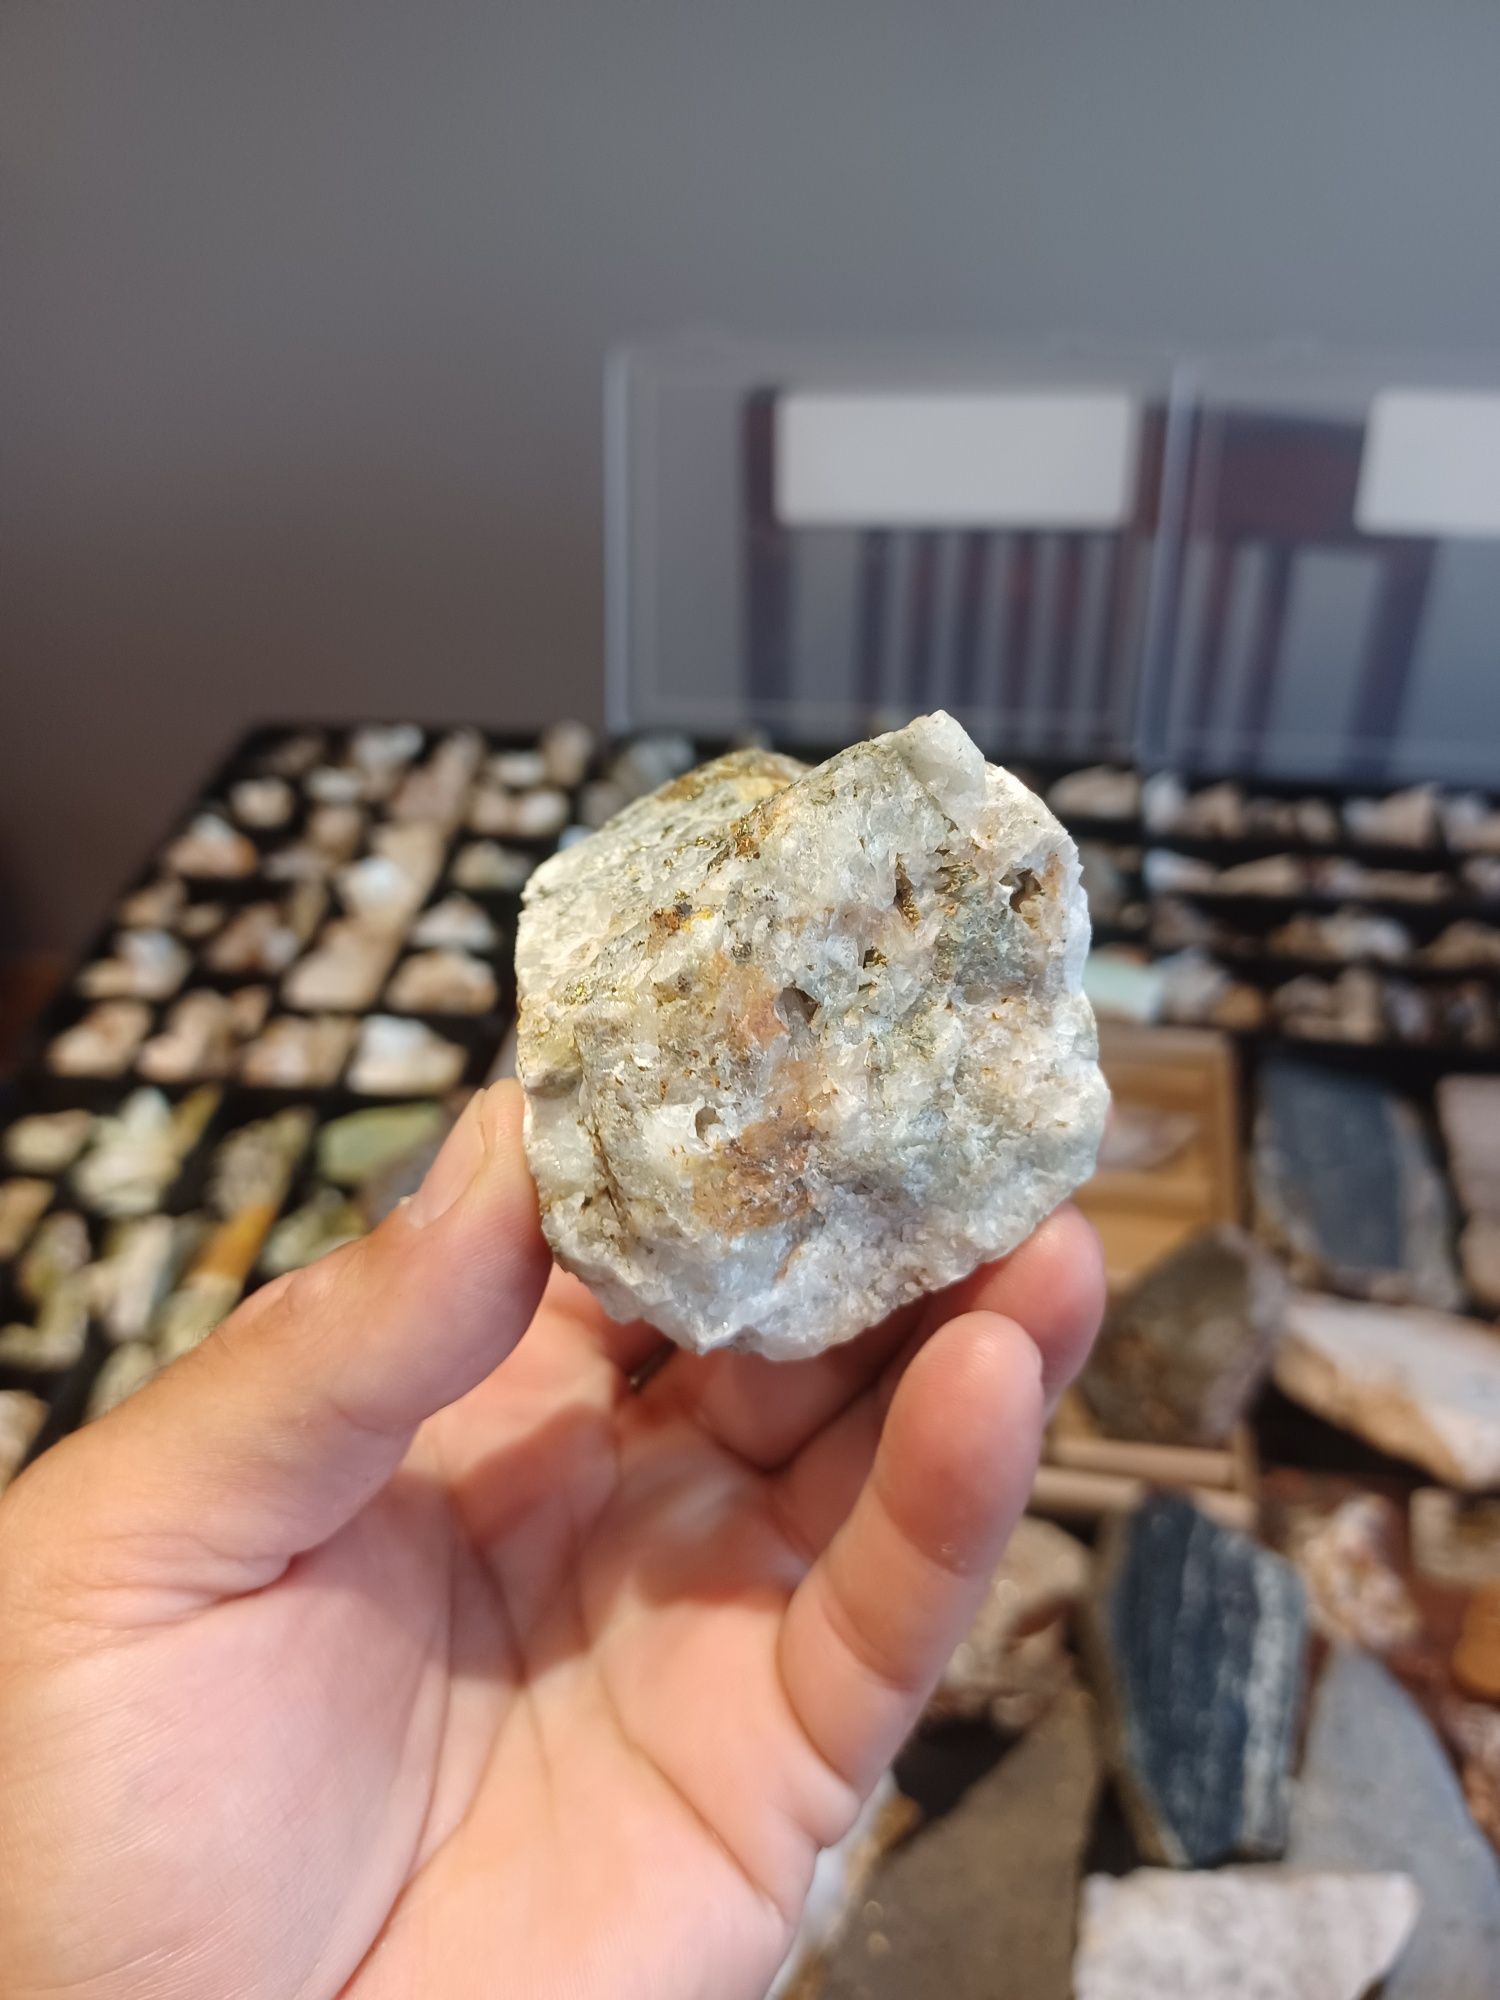 Minerały skamieniałości skały żyłą polimetaliczna z pirytem I chalkopi